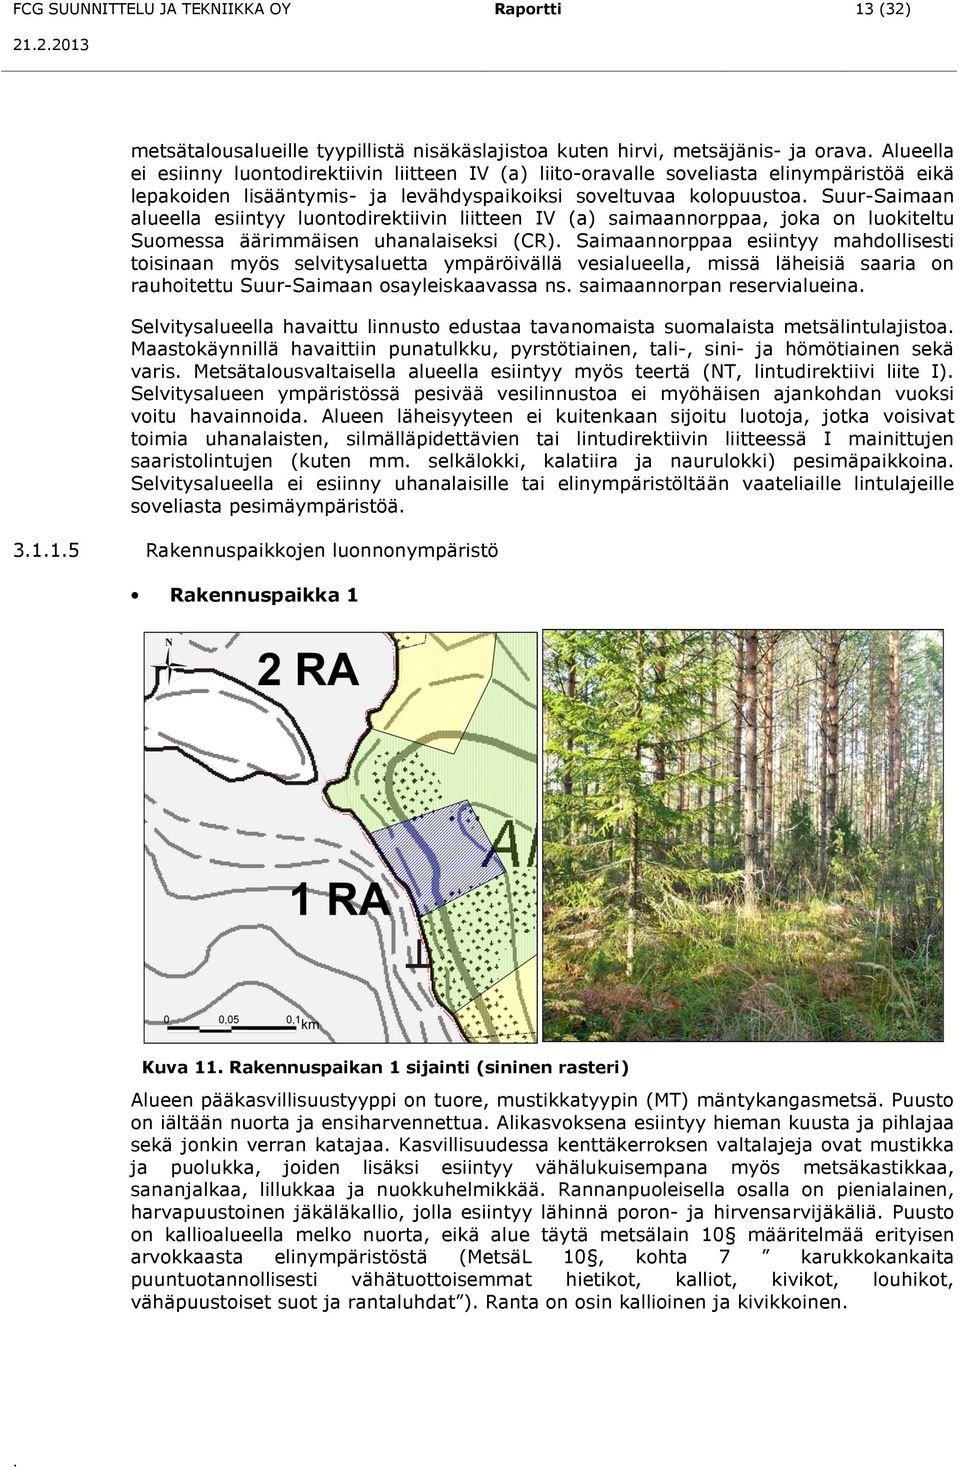 Suur-Saimaan alueella esiintyy luontodirektiivin liitteen IV (a) saimaannorppaa, joka on luokiteltu Suomessa äärimmäisen uhanalaiseksi (CR).